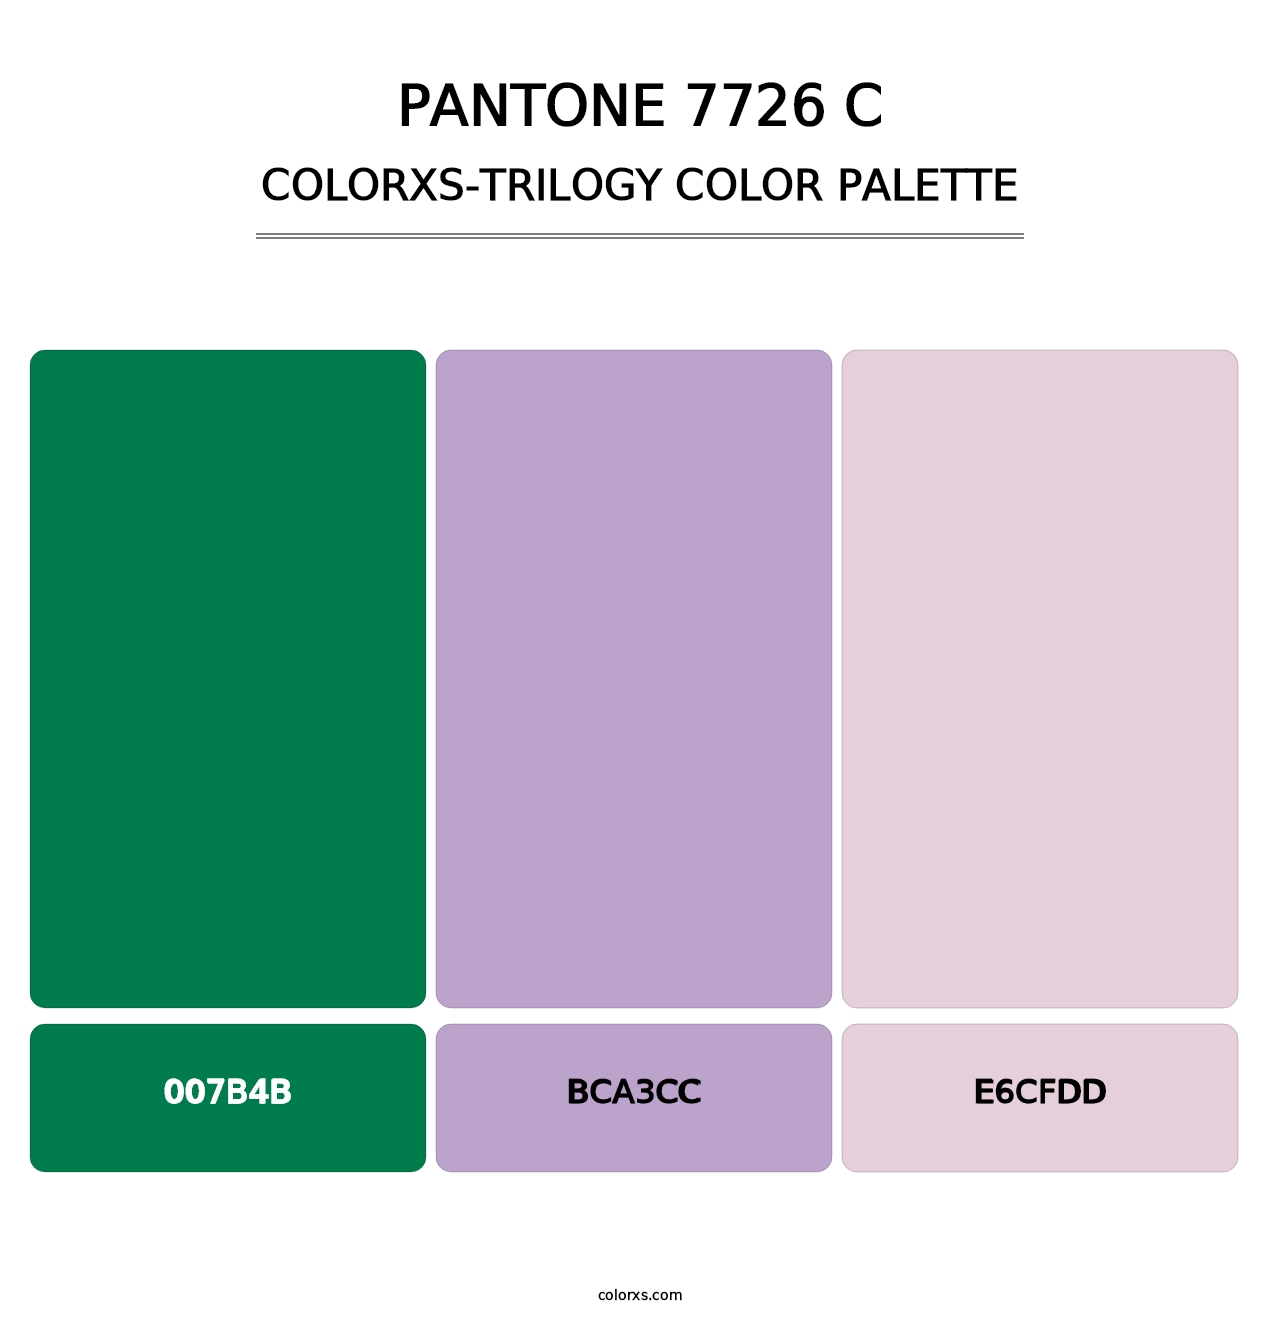 PANTONE 7726 C - Colorxs Trilogy Palette